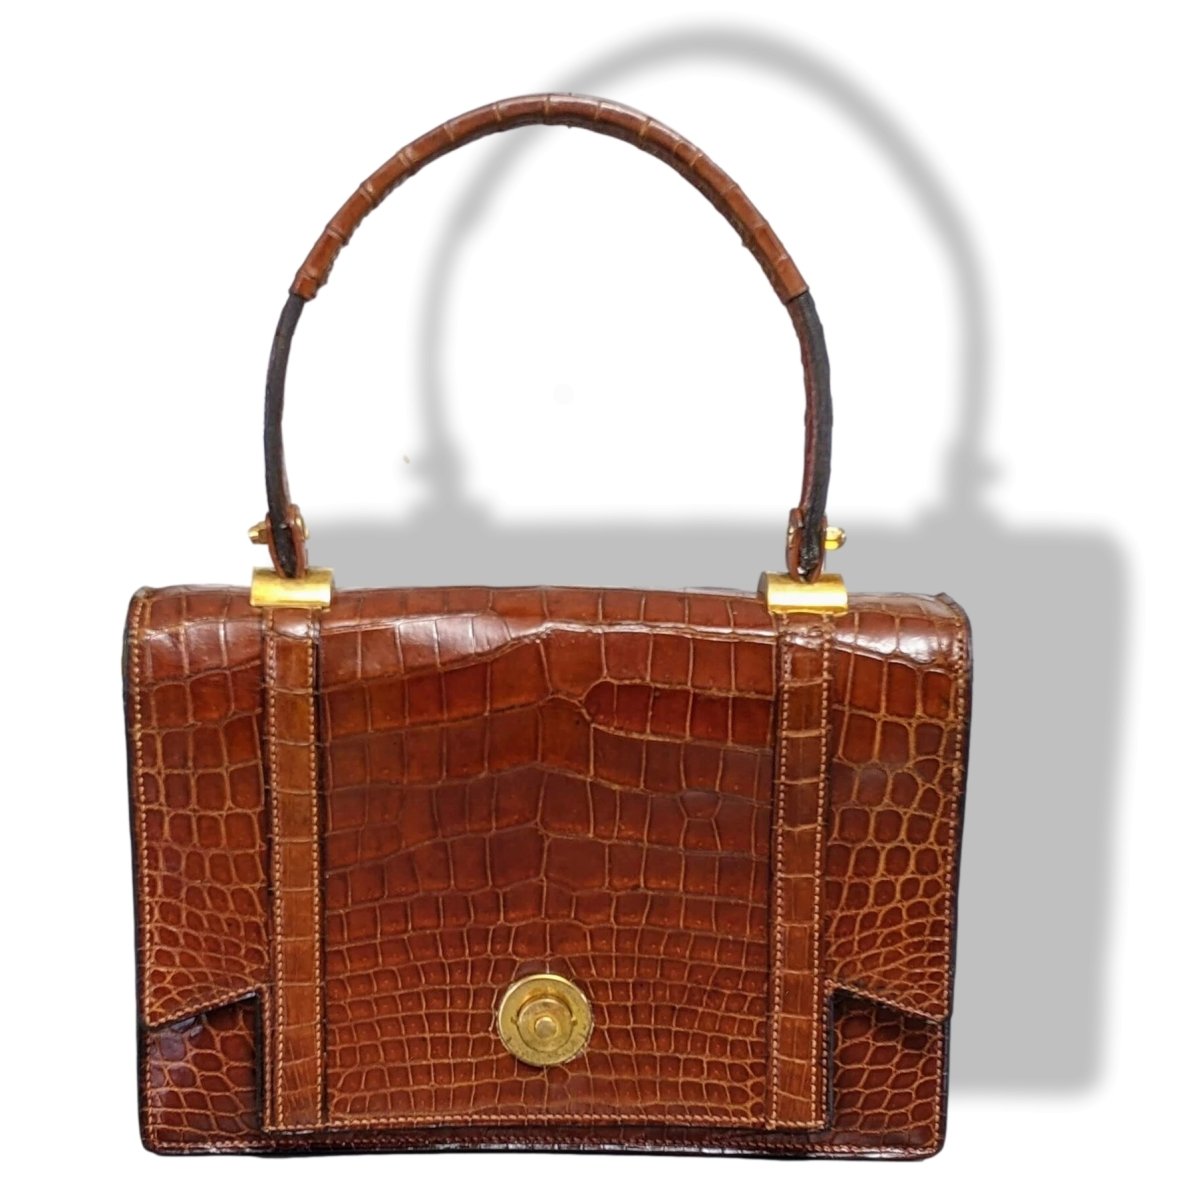 Hermes Vintage 1960s Black Crocodile Skin Top Handle Handbag